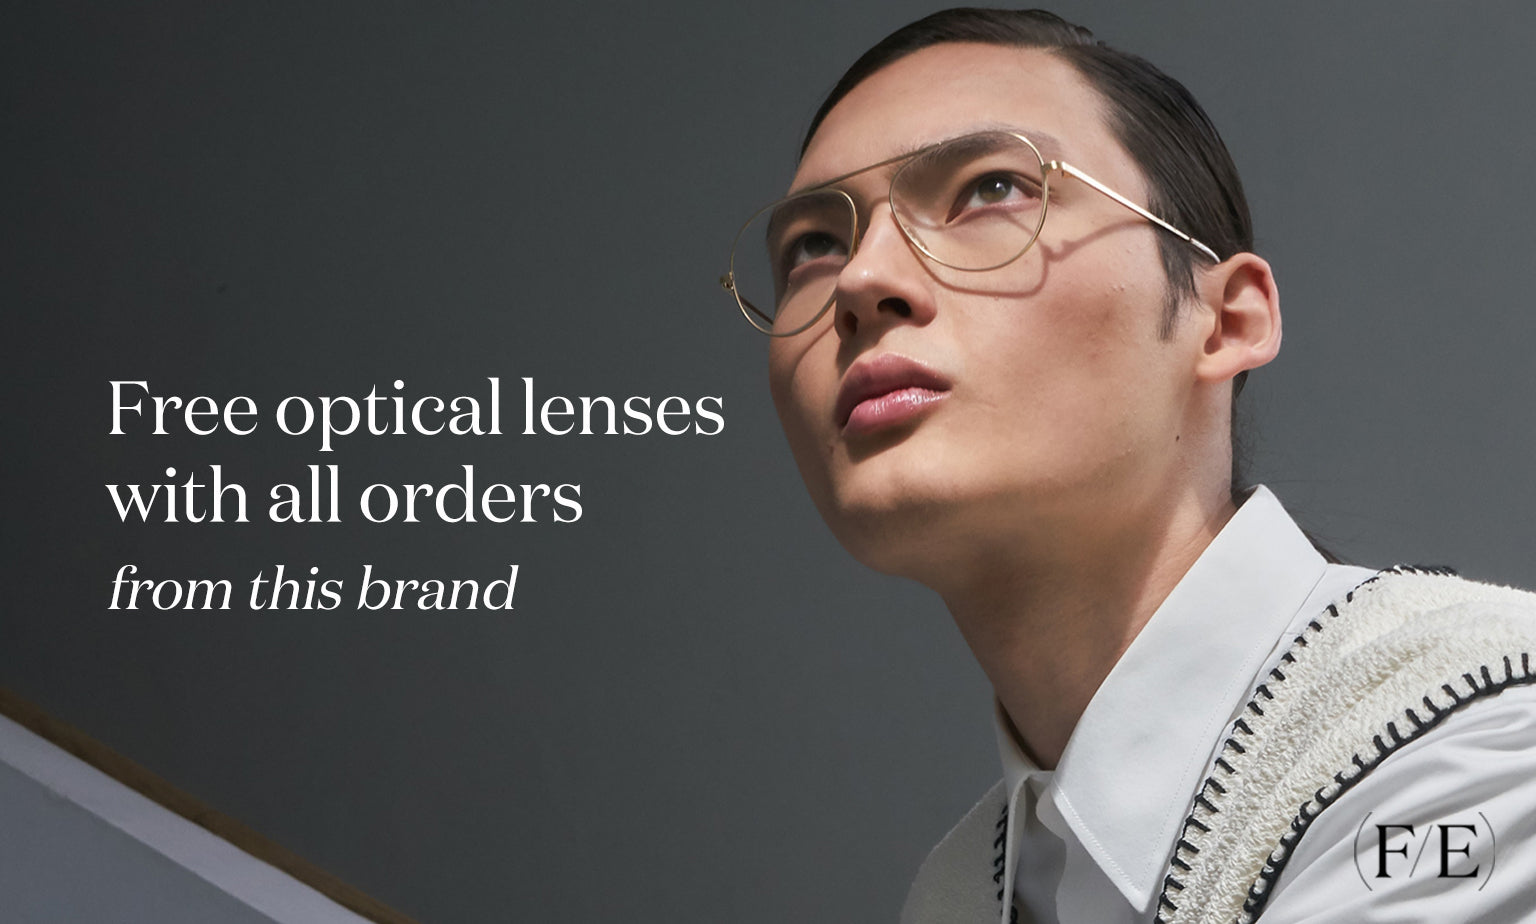 Chanel - Butterfly Eyeglasses - Transparent Beige - Chanel Eyewear -  Avvenice